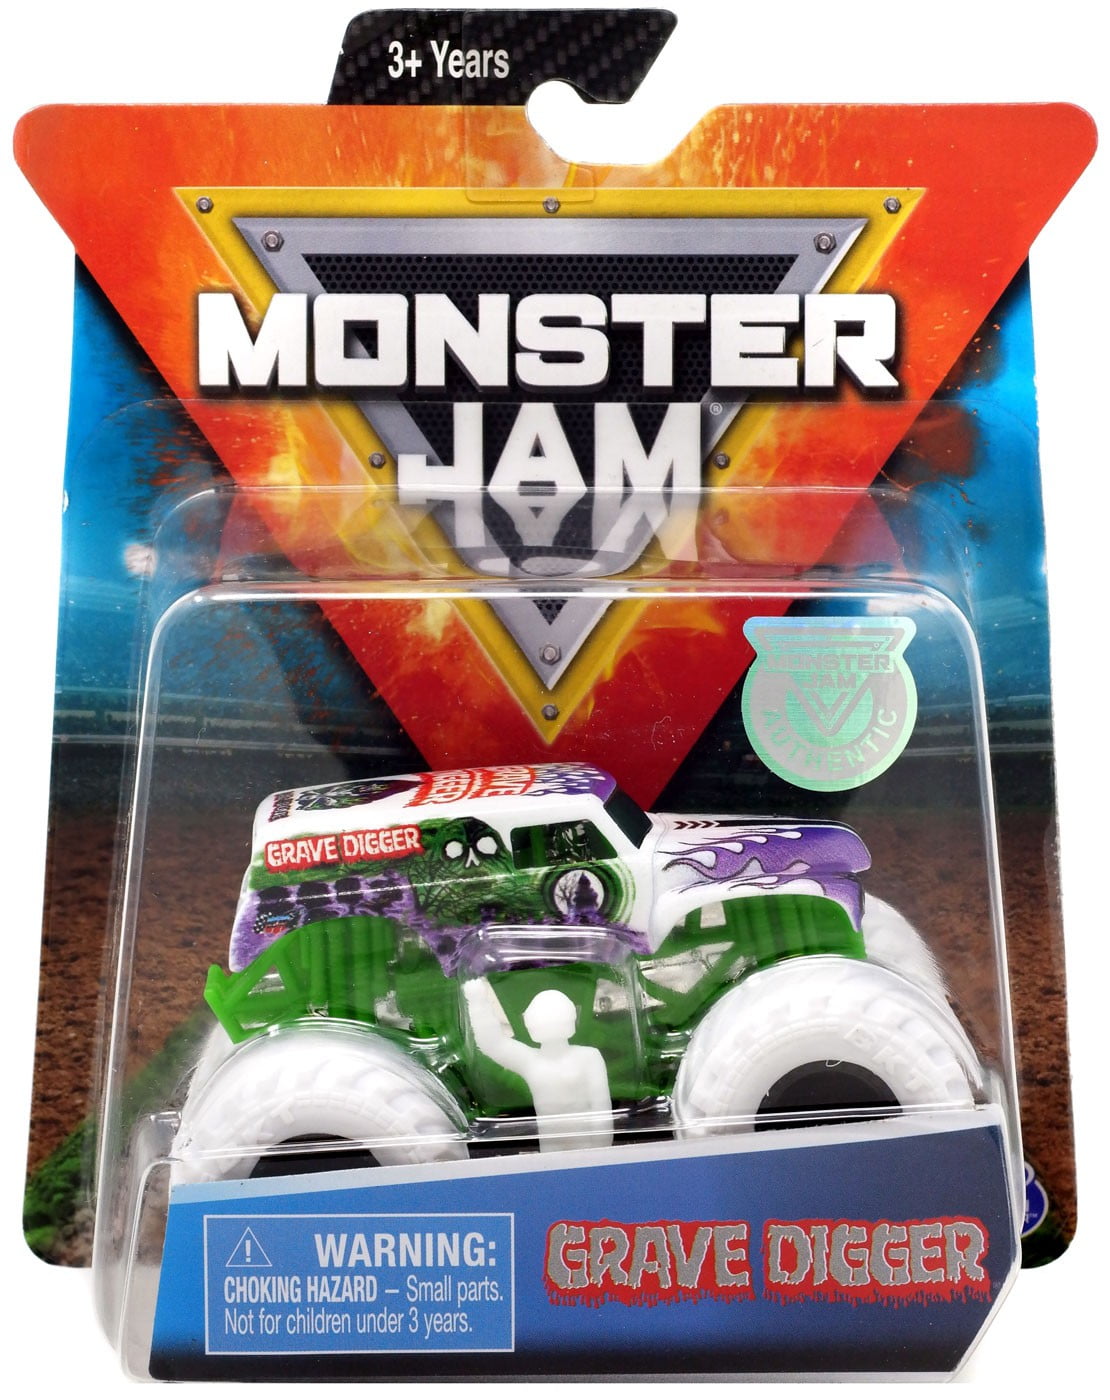 1/64 Monster Truck Toys